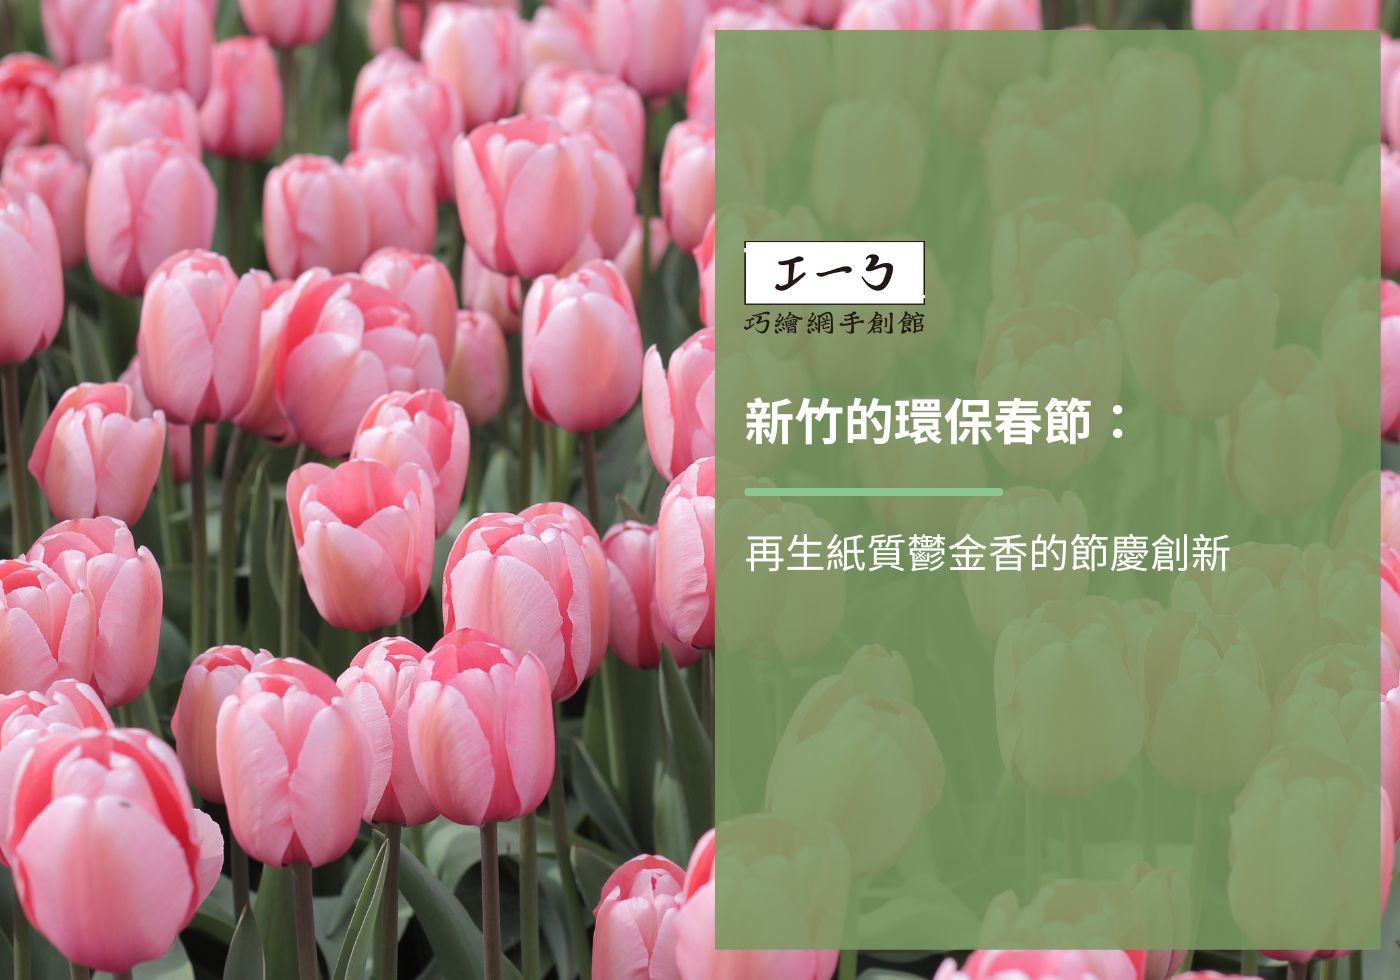 您目前正在查看 新竹的環保春節：再生紙質鬱金香的節慶創新